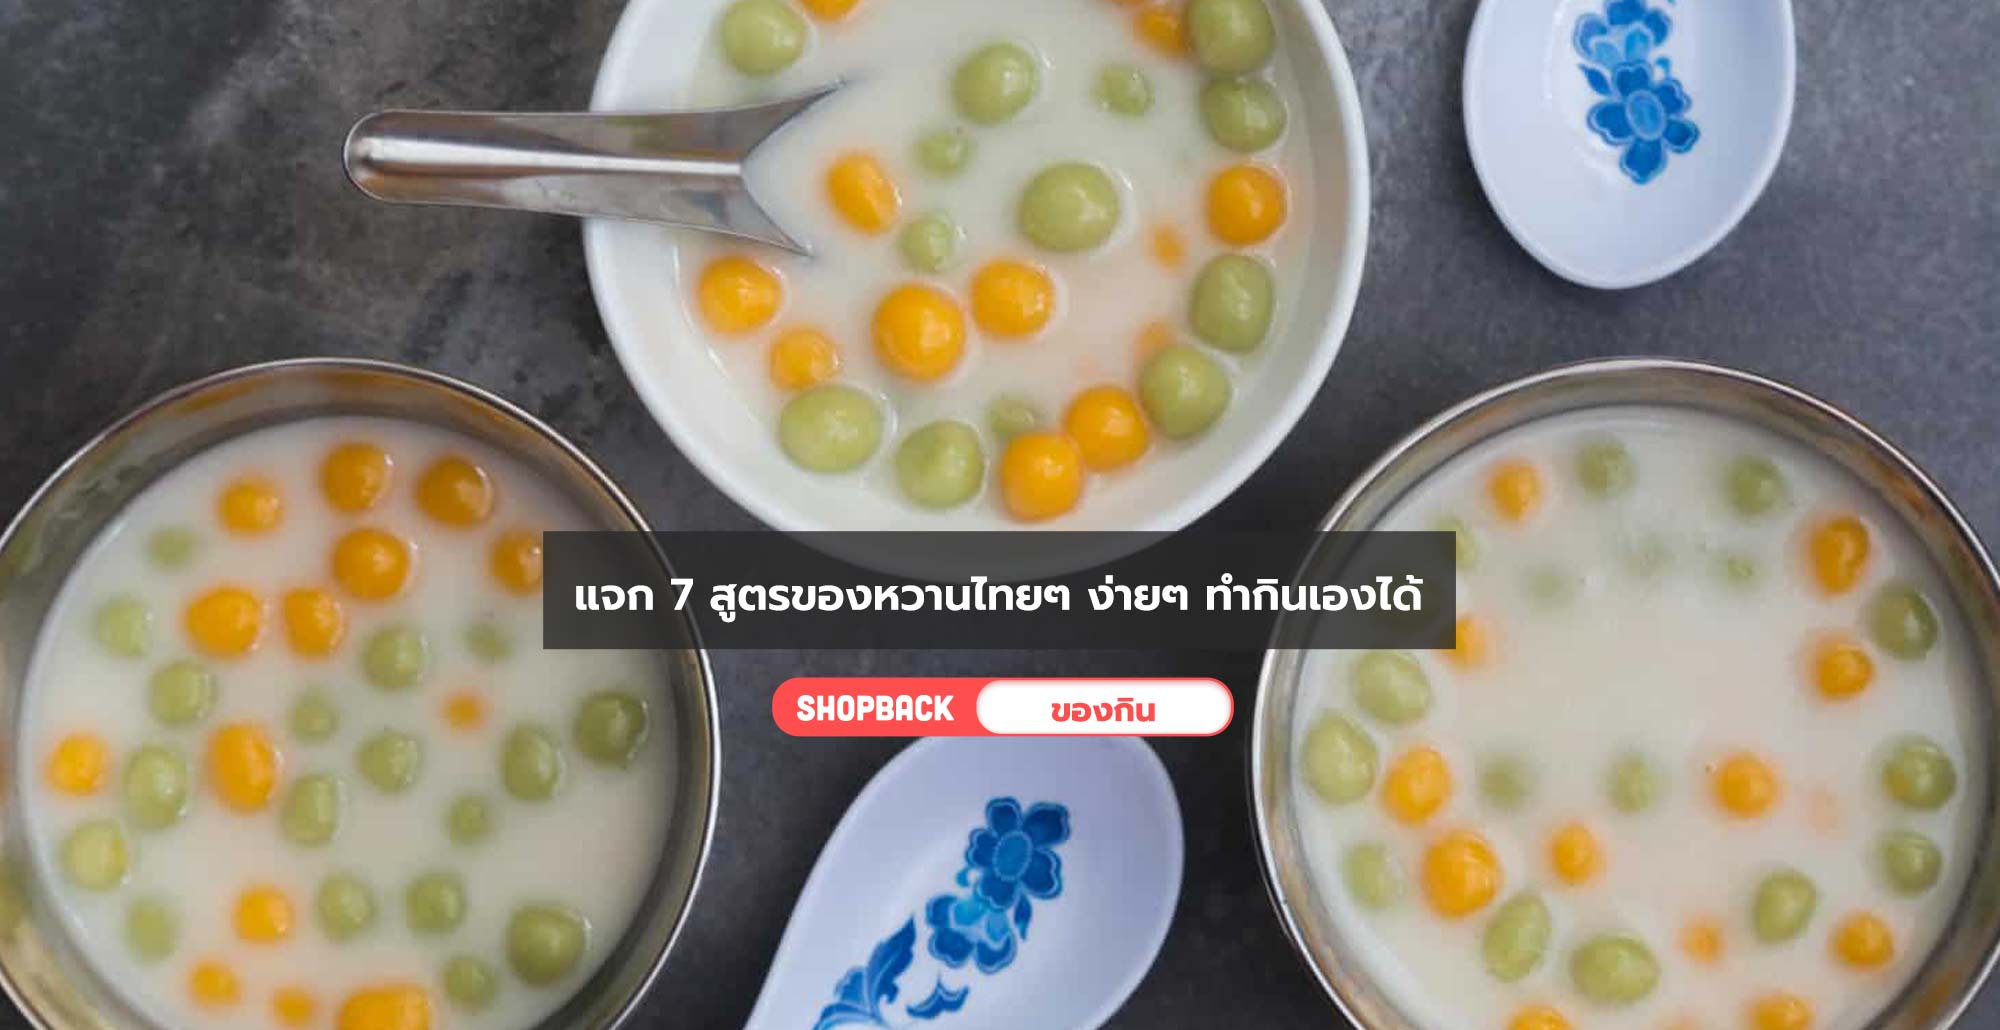 แจก 7 สูตรของหวานไทยๆ ง่ายๆ ทำกินเองก็ได้ จะสั่งออนไลน์ก็มี